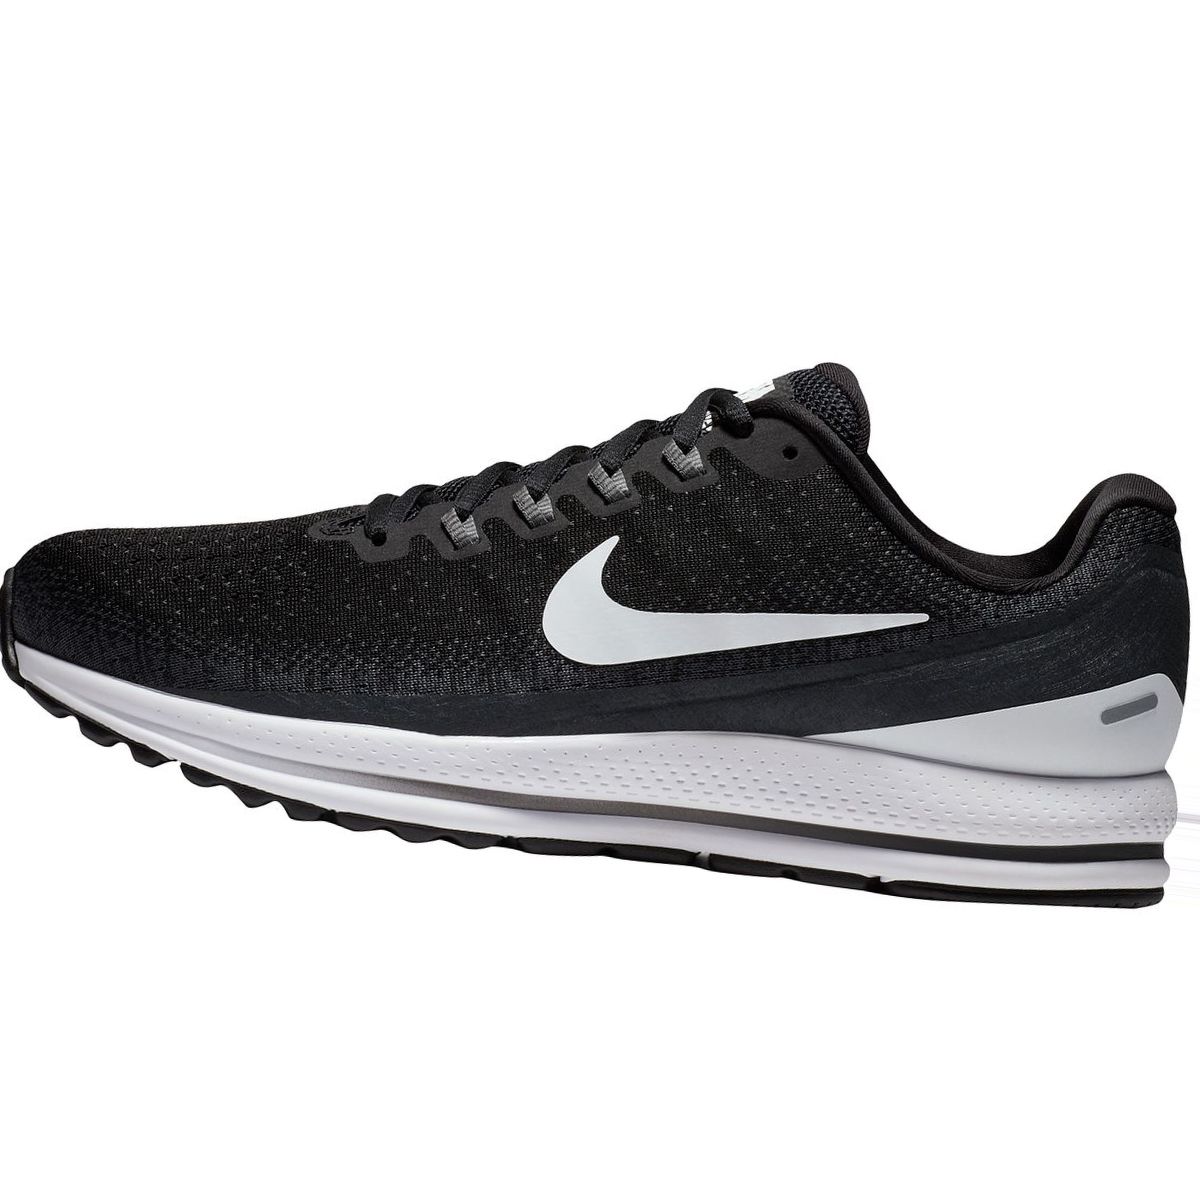 Nike Air Zoom Vomero 13 Running Shoe - Men's